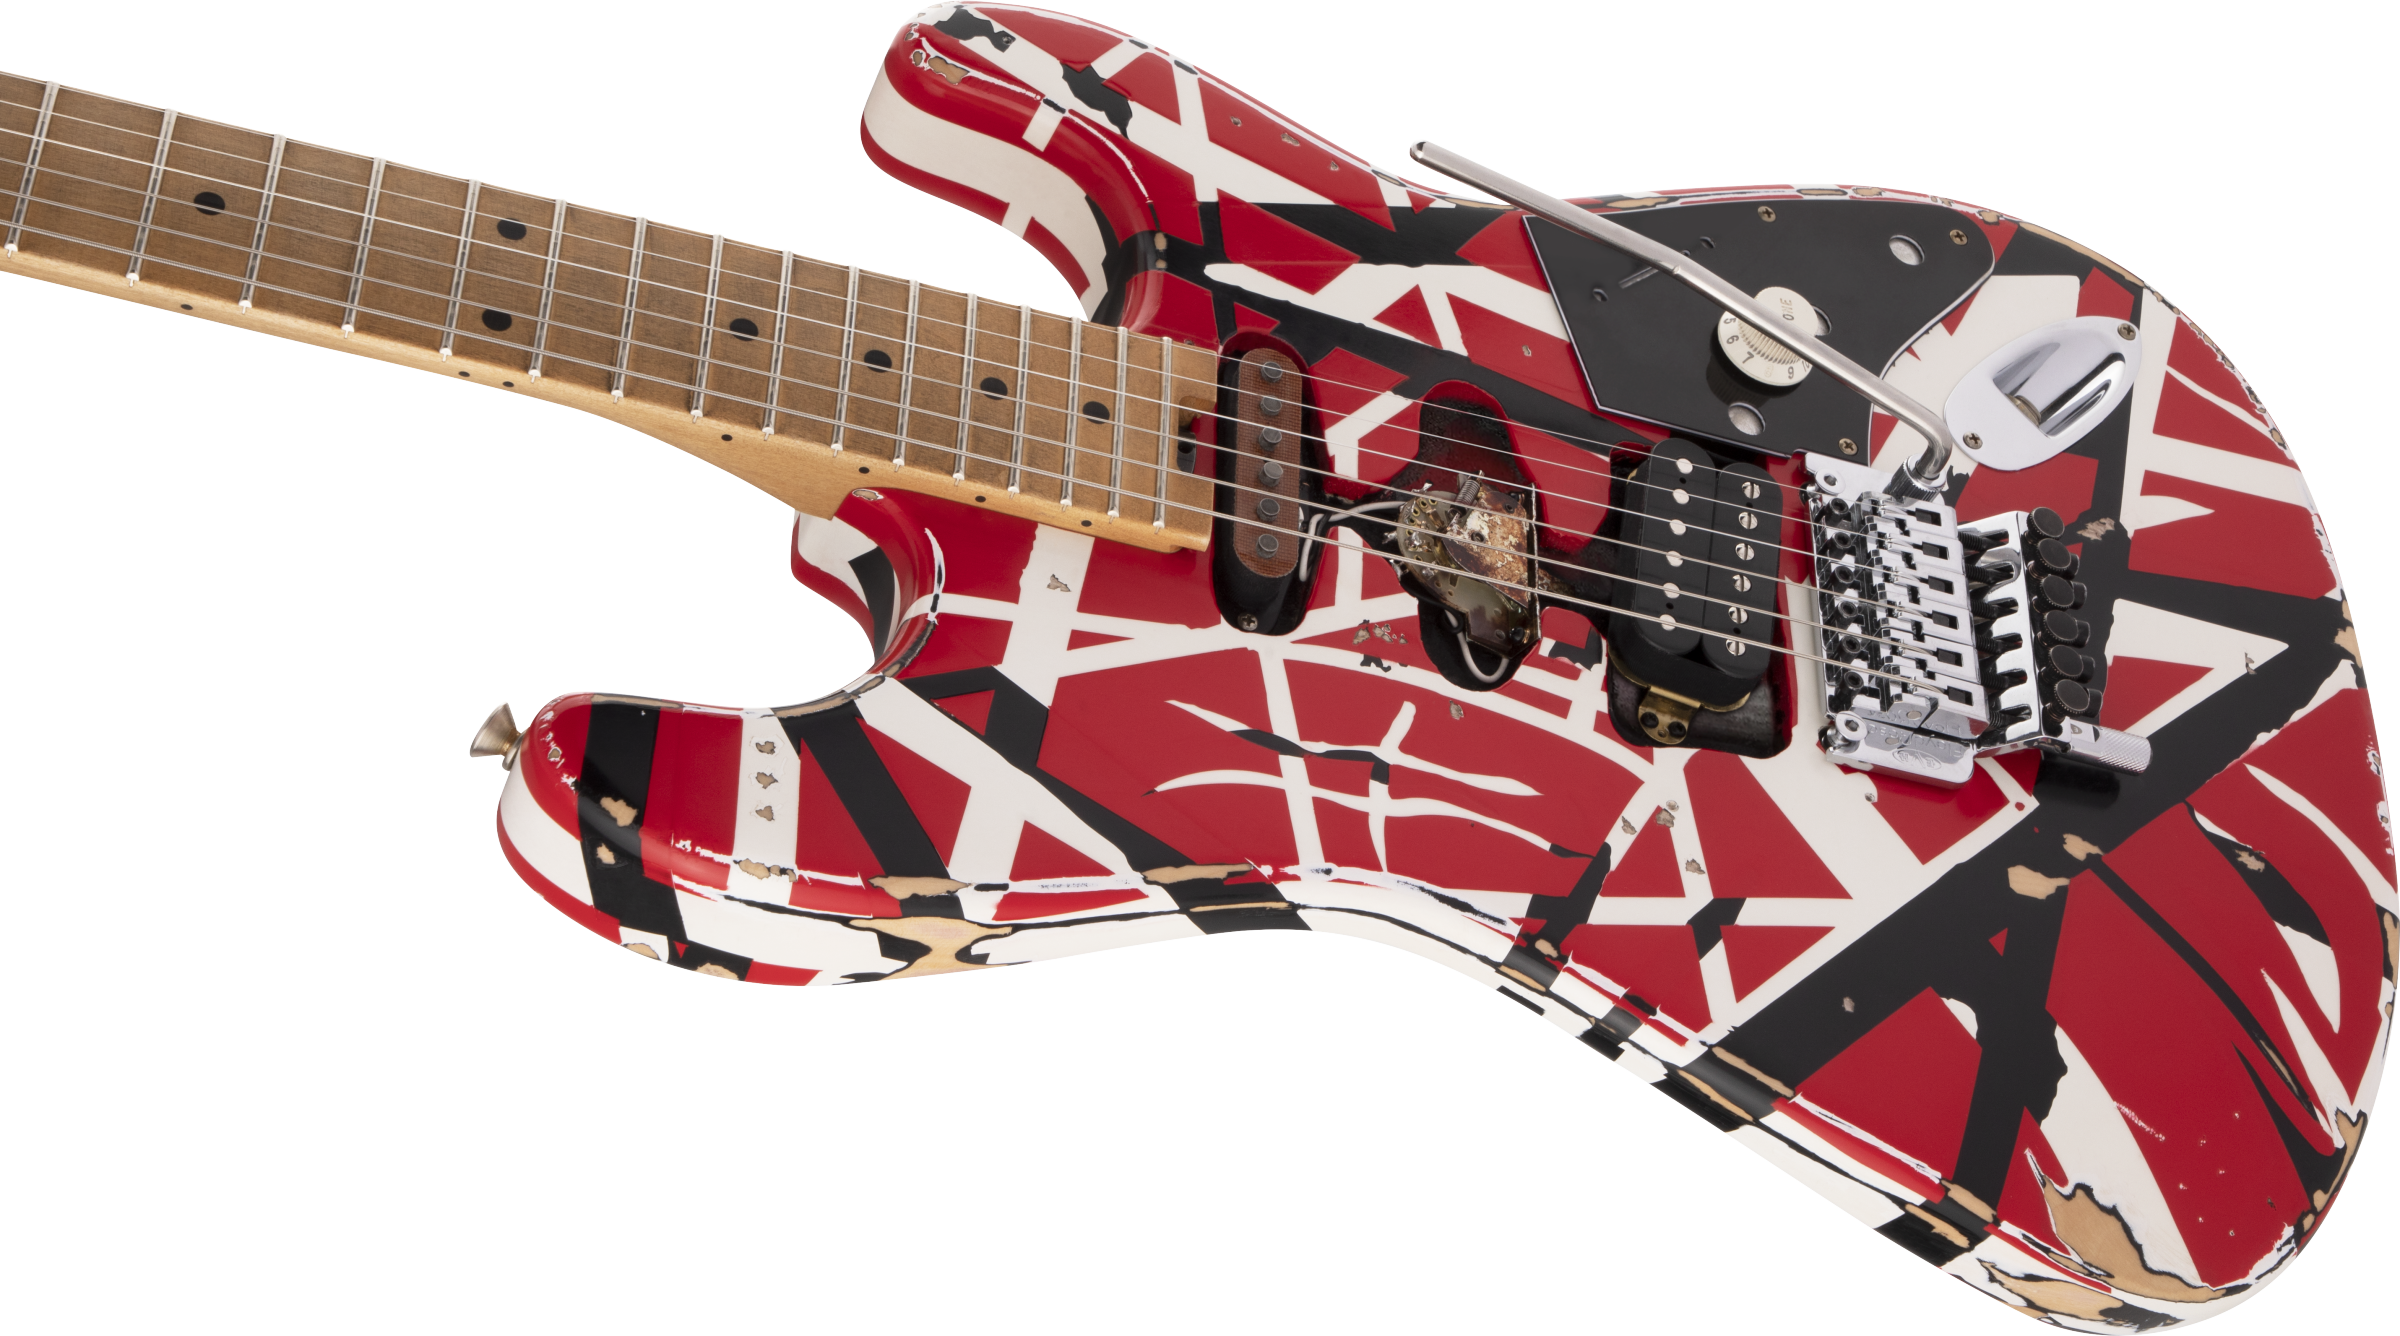 Evh Eddie Van Halen Frankenstein Frankie Striped Series Mex H Fr Mn - Red With Black & White Stripes - E-Gitarre in Str-Form - Variation 5